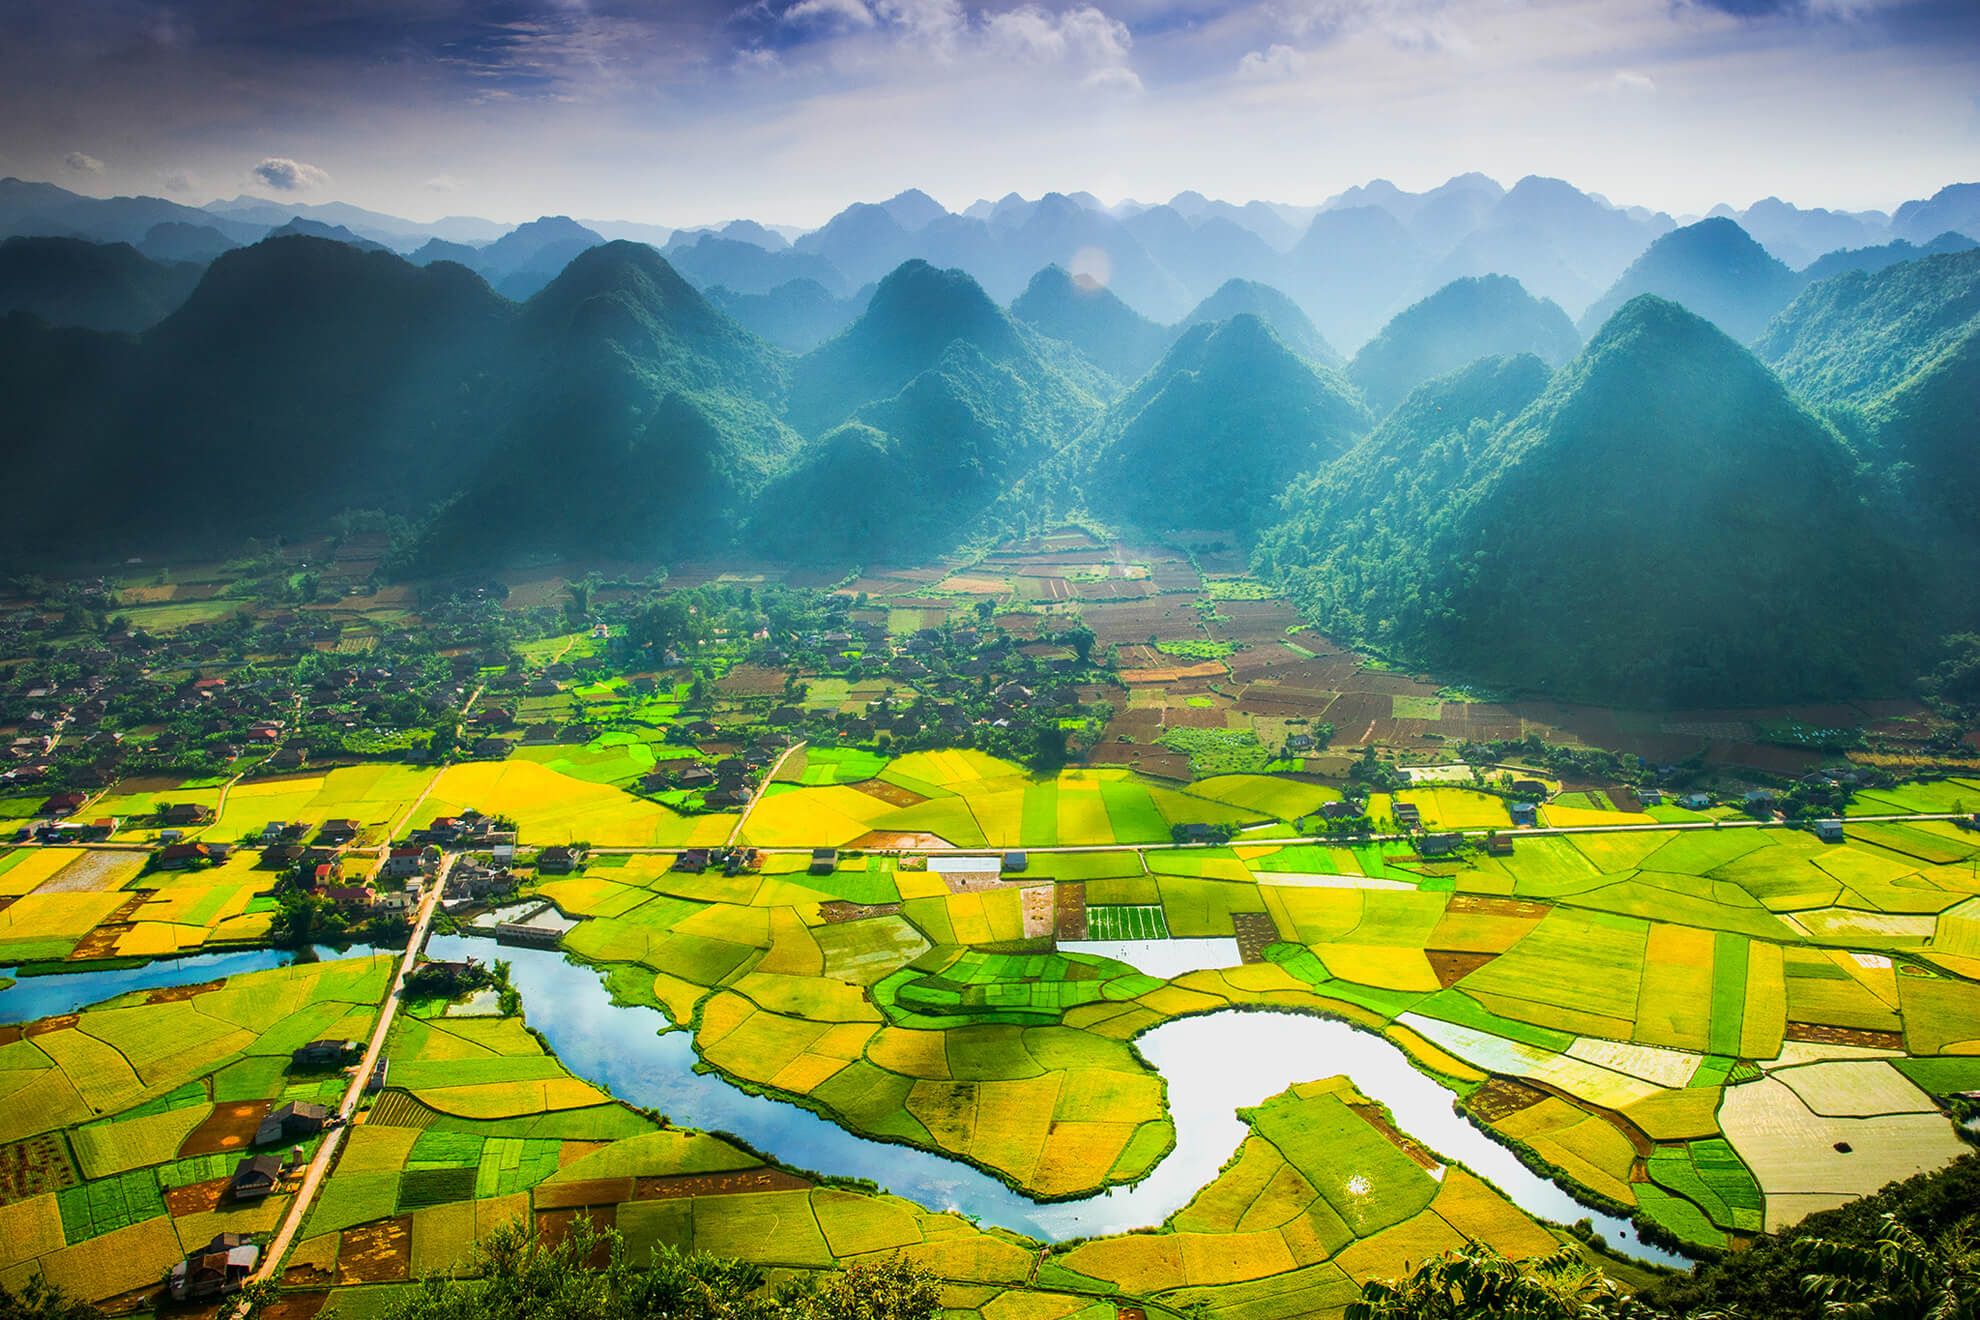 Phong cảnh thun lũng Bắc Sơn Việt Nam đẹp như tranh vẽ